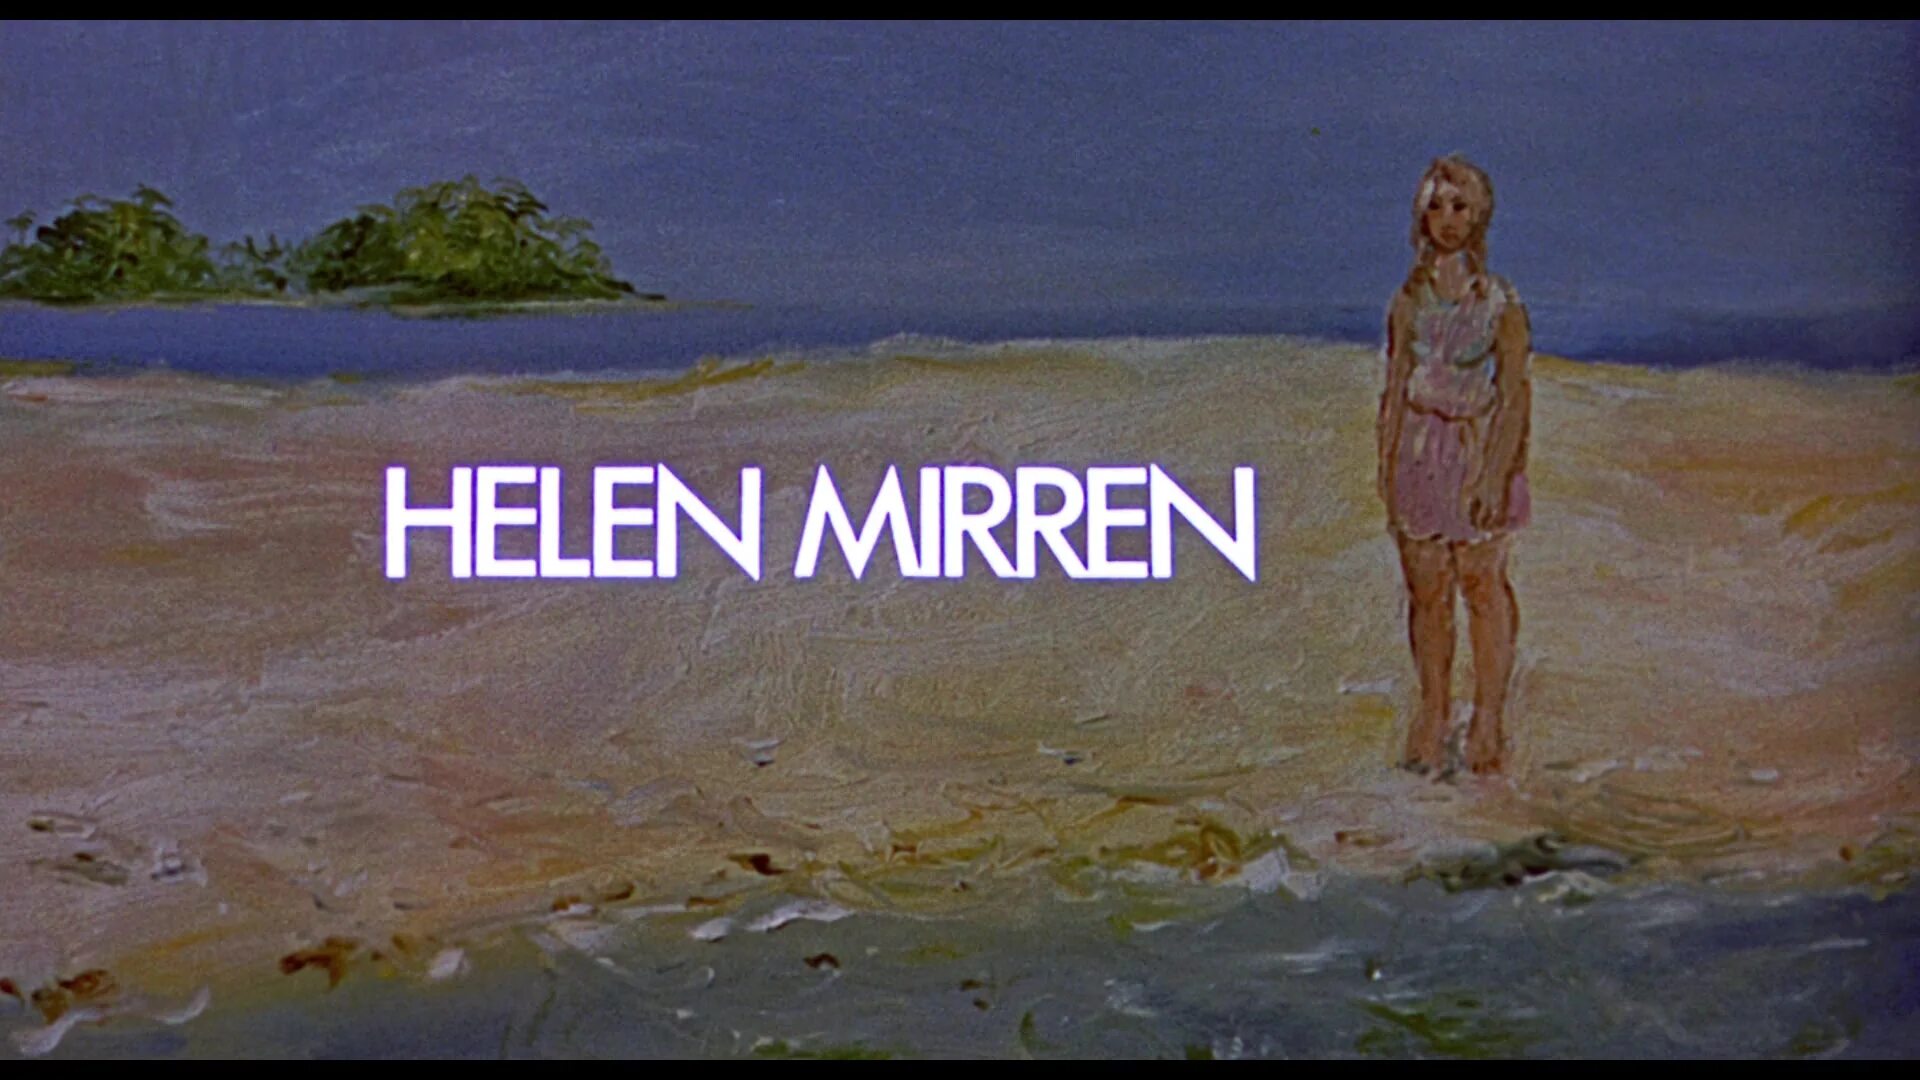 Хелен Миррен age of consent (1969). Хелен Миррен 1969. Хелен Миррен совершеннолетие (1969). Хелен Миррен совершеннолетие 1968.